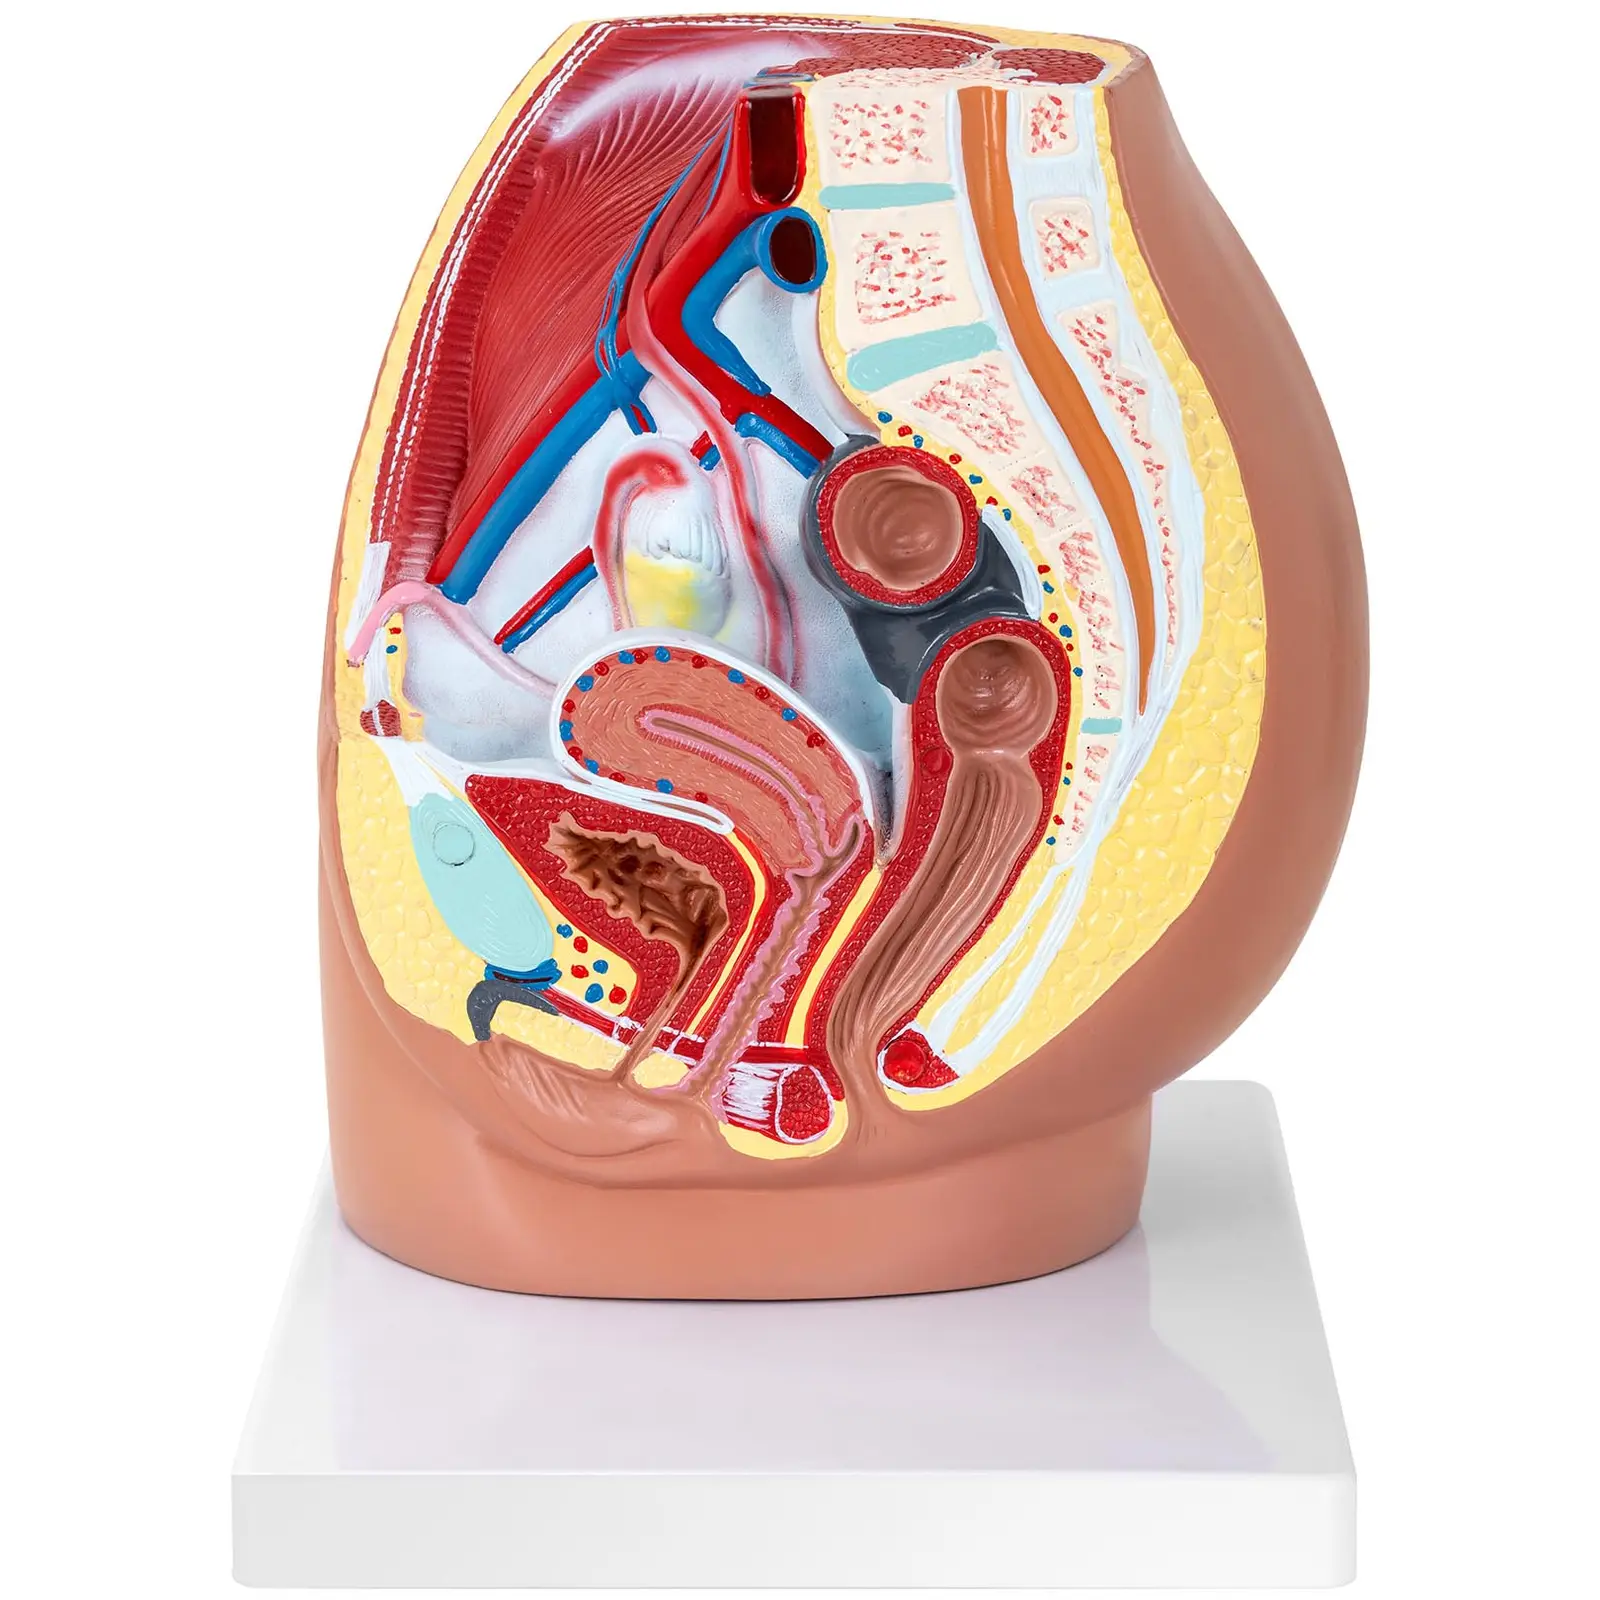 Modello anatomico bacino femminile - Smontabile in 3 parti - Grandezza naturale